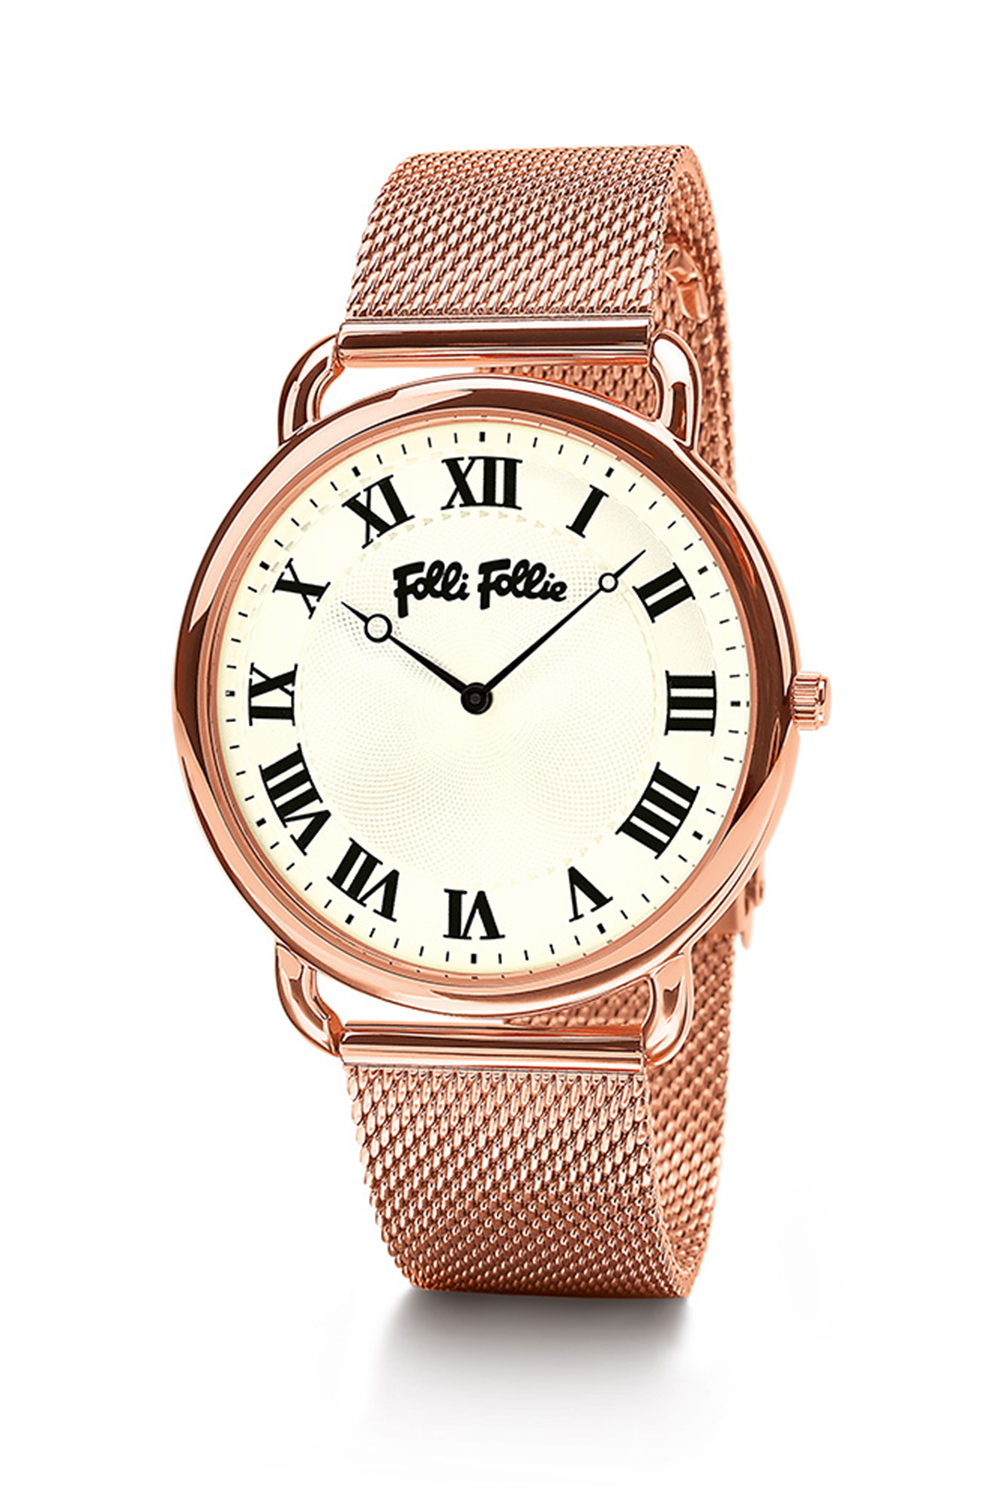 Γυναικεία/Αξεσουάρ/Ρολόγια/Μπρασελέ FOLLI FOLLIE - Γυναικείο ρολόι από ατσάλι FOLLI FOLLIE PERFECT MATCH ροζ χρυσό